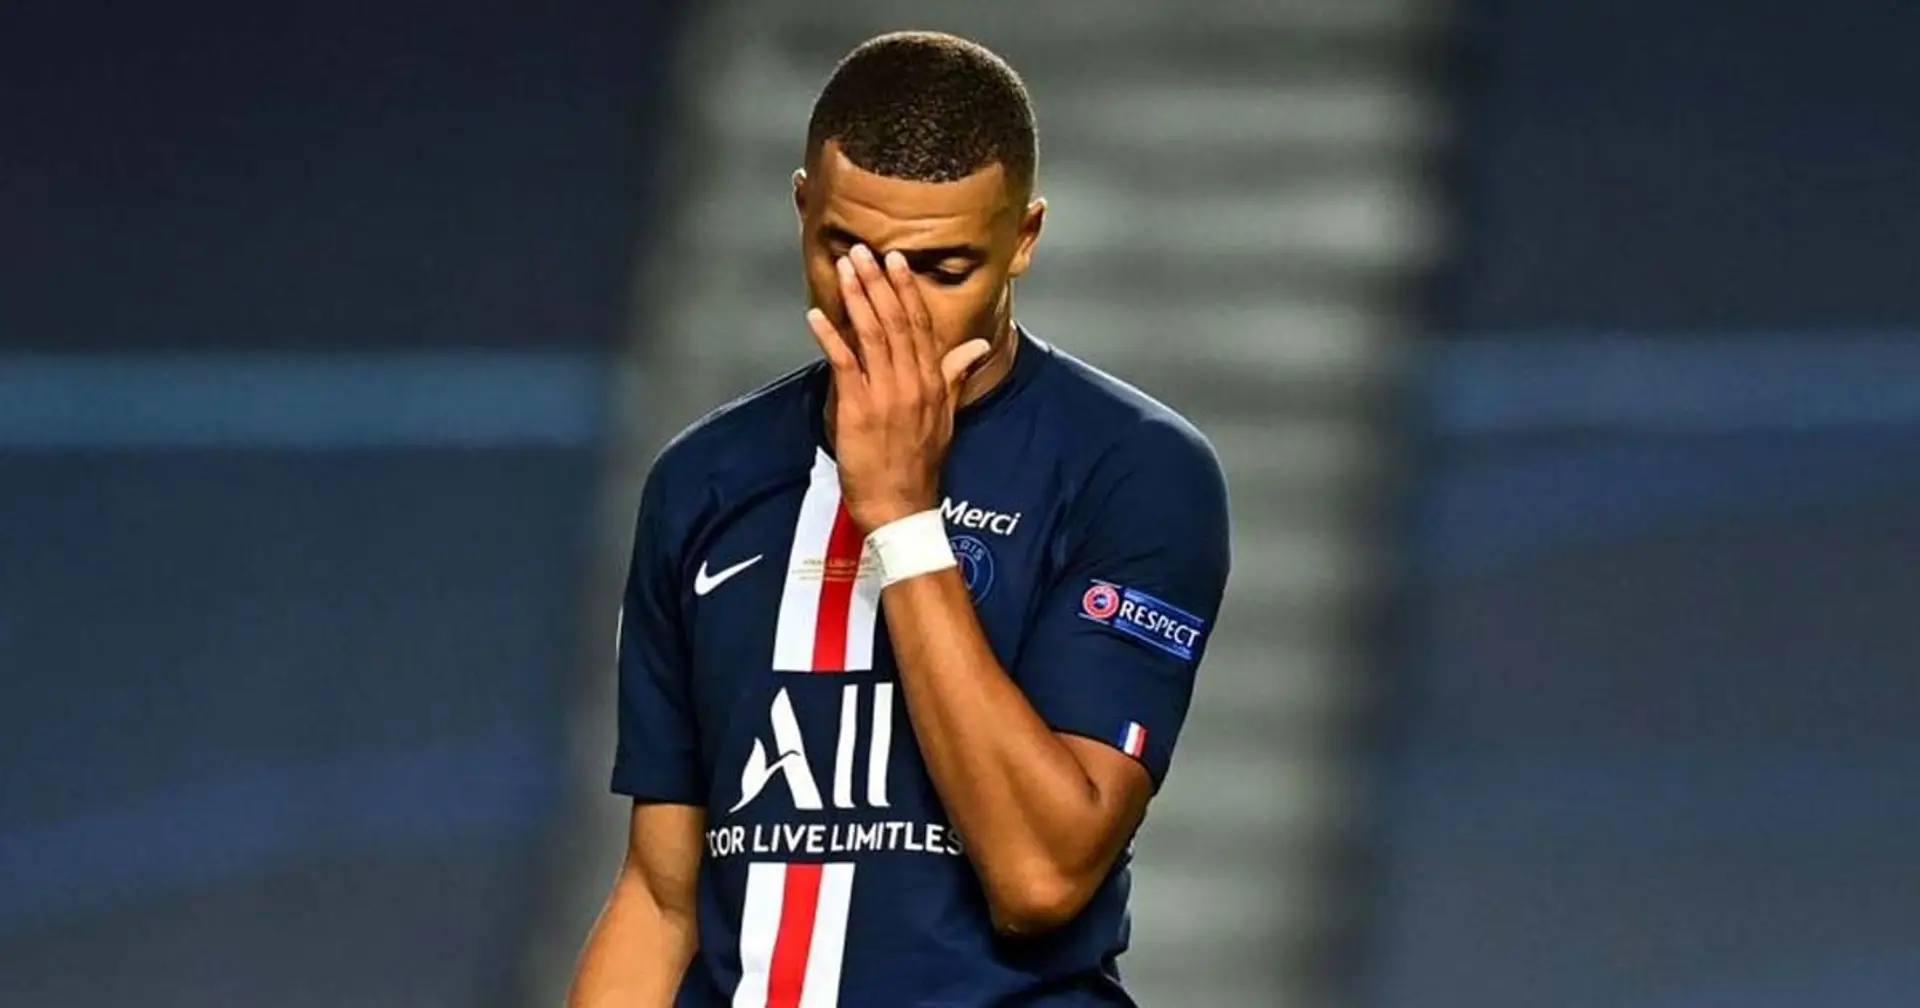 Peu de ballons touchés, faute bête et d'autres signes du match catastrophique de Mbappé face à Reims